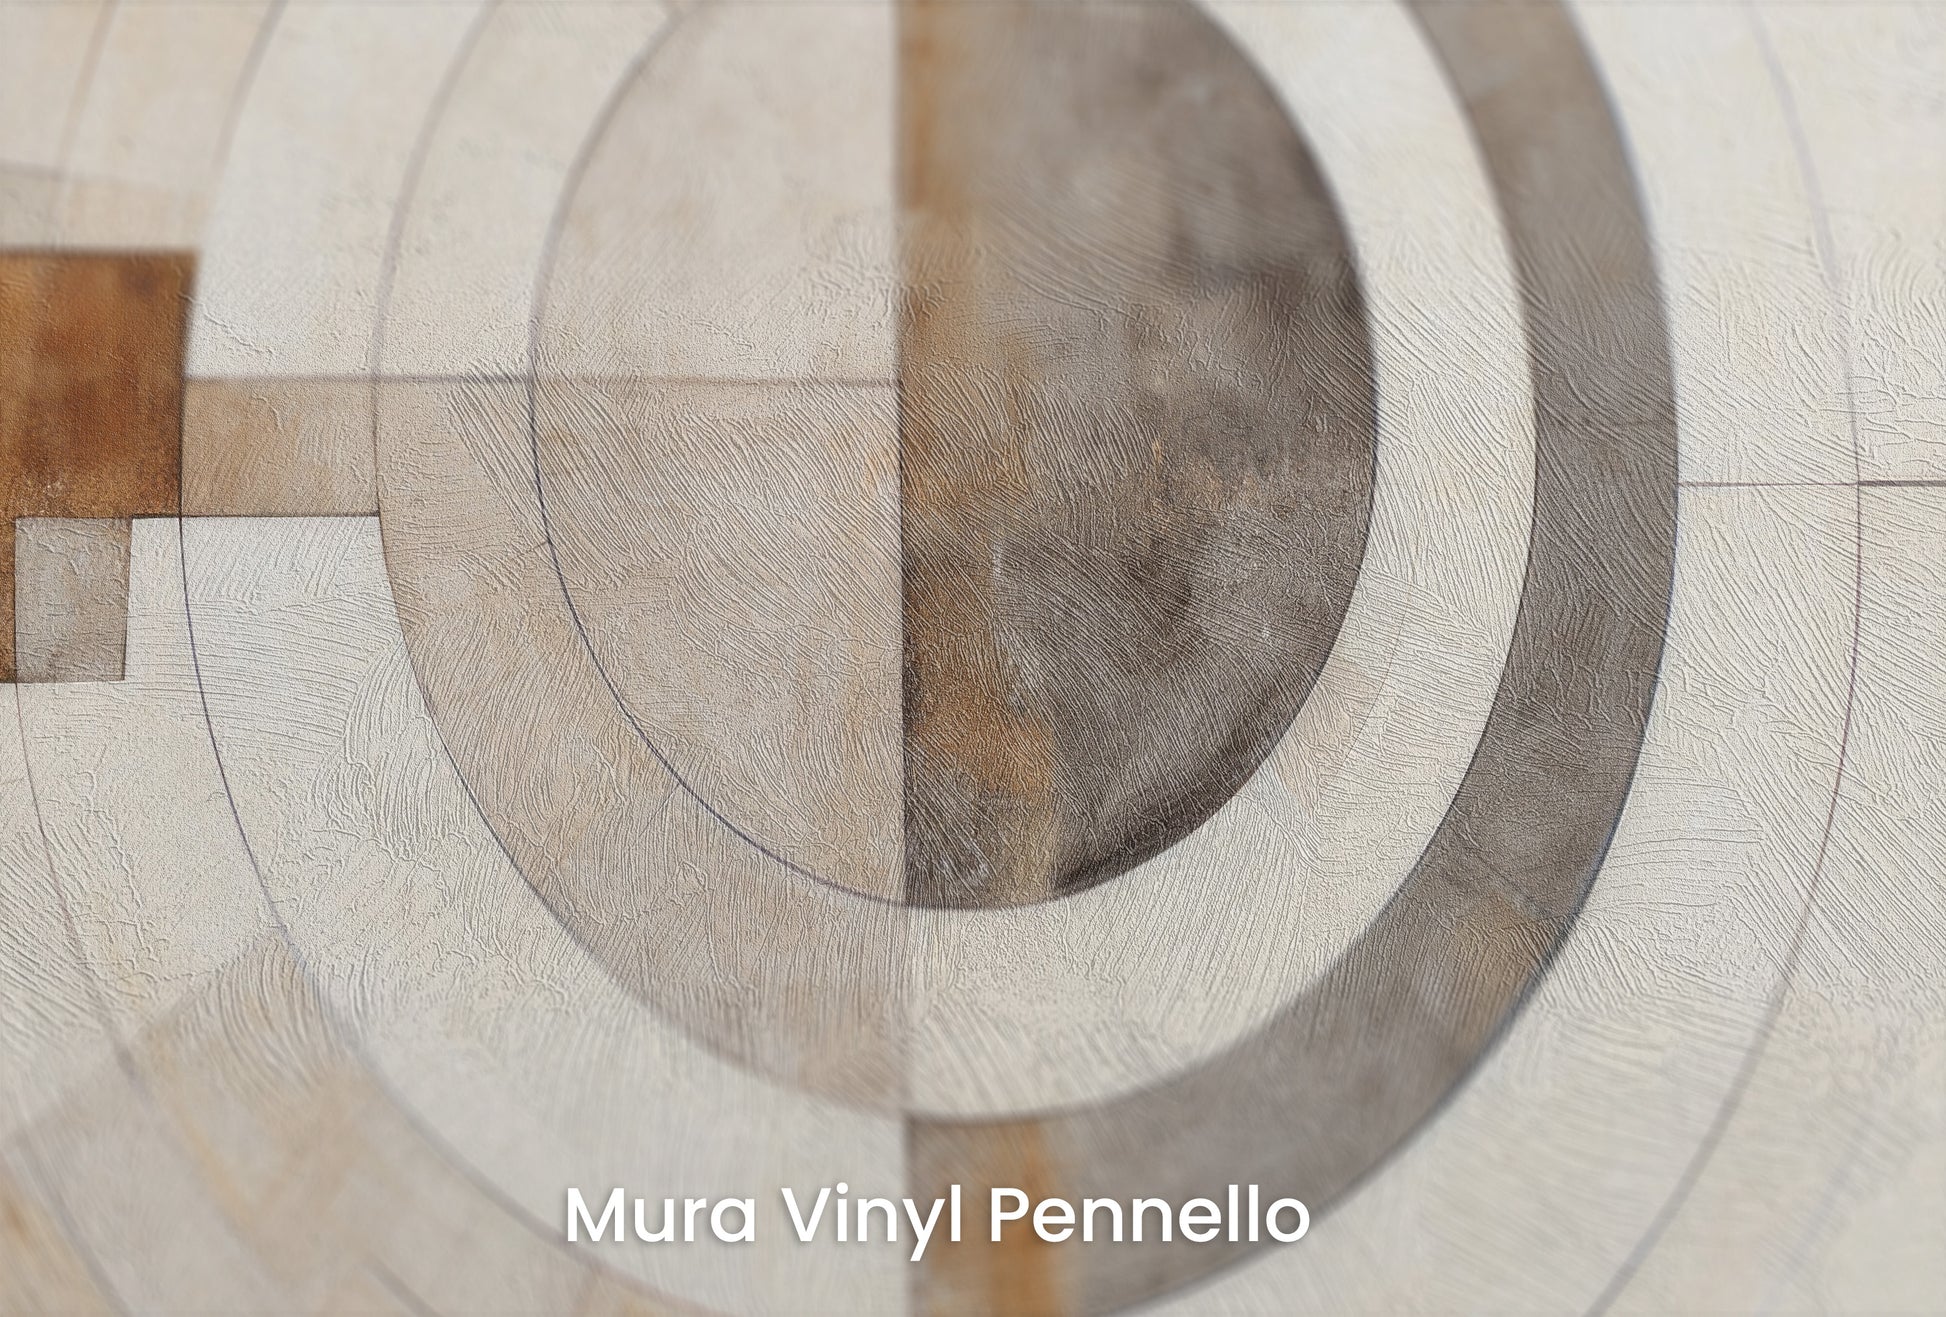 Zbliżenie na artystyczną fototapetę o nazwie ARCHITECTURAL ORBITAL DESIGN #2 na podłożu Mura Vinyl Pennello - faktura pociągnięć pędzla malarskiego.